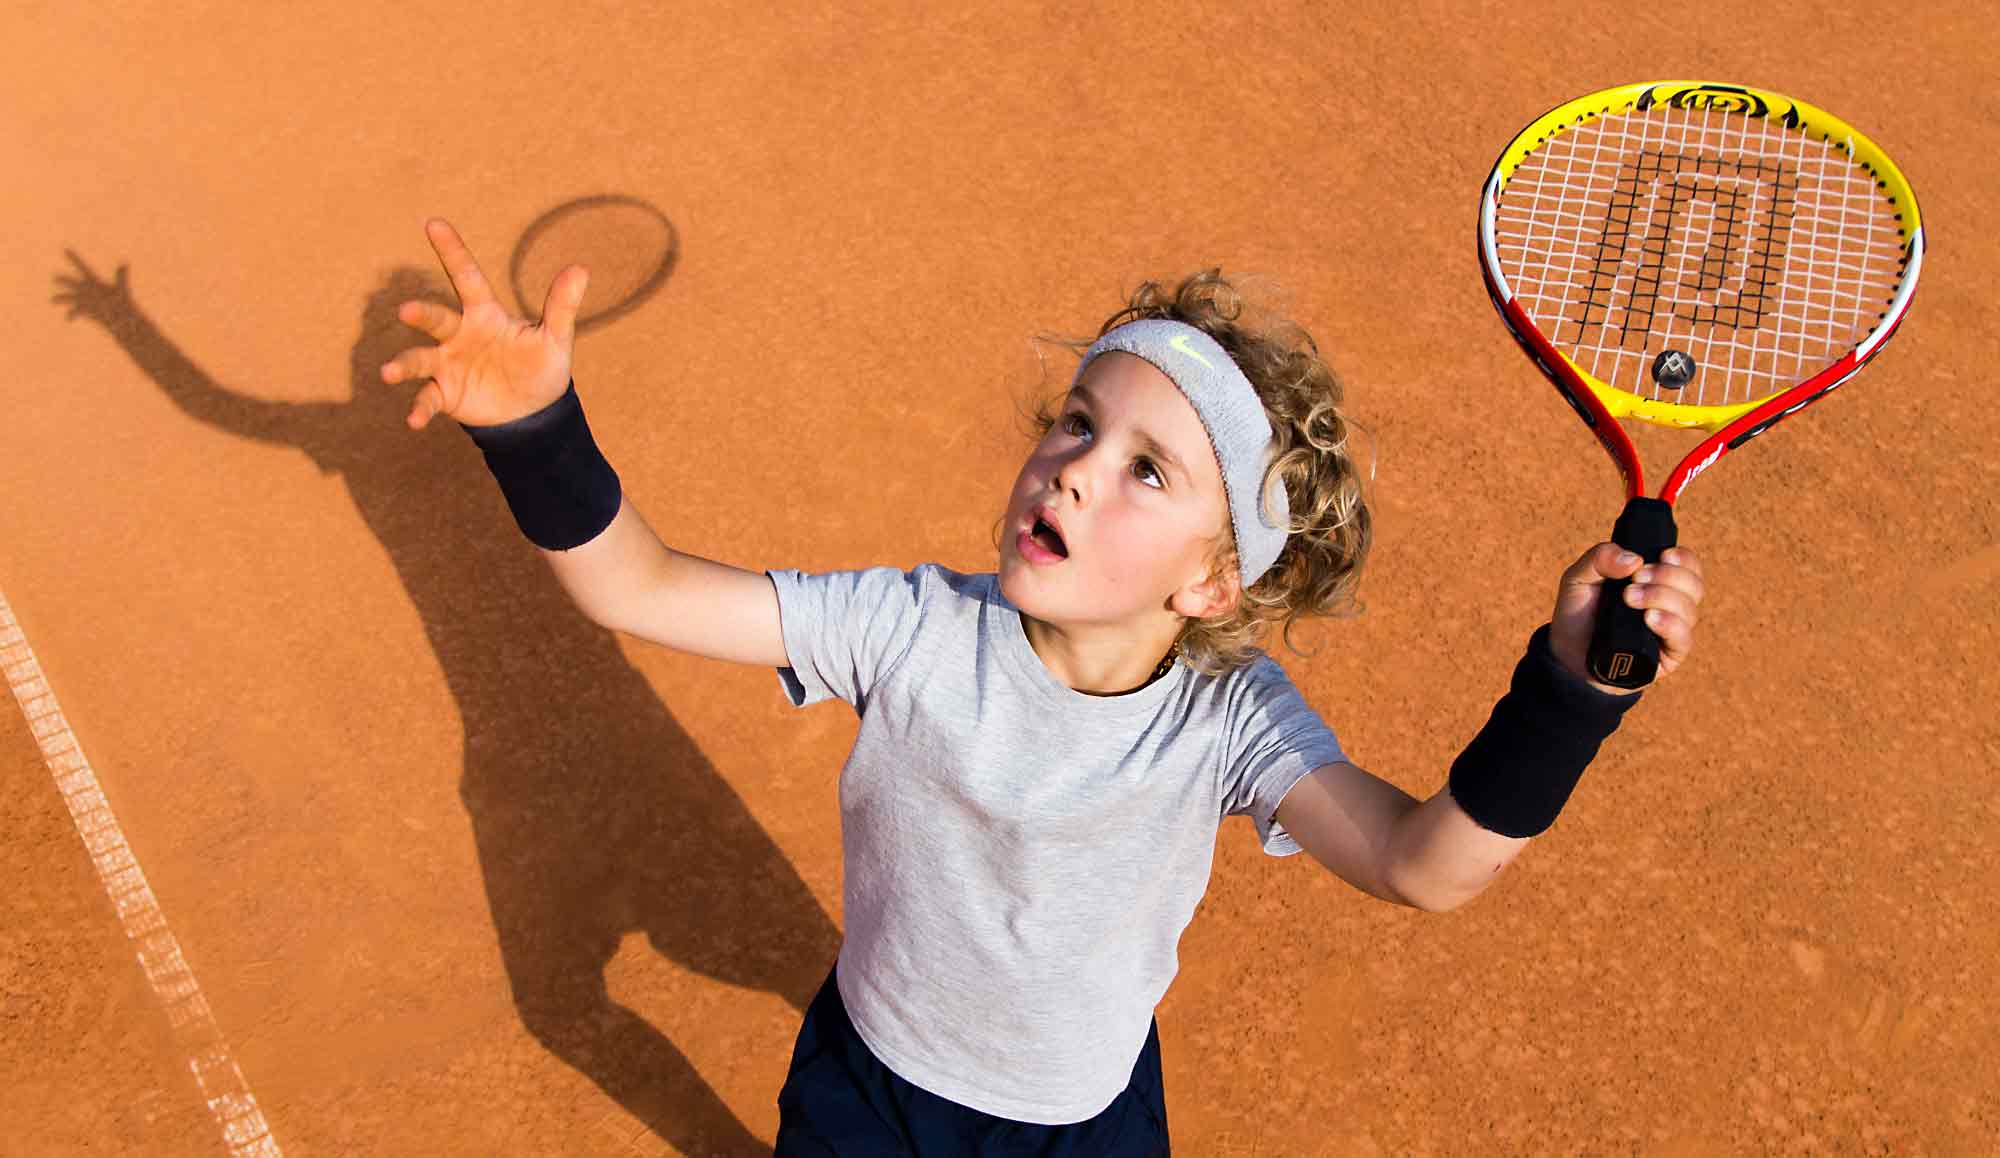 Tennis Kind beim Aufschlag